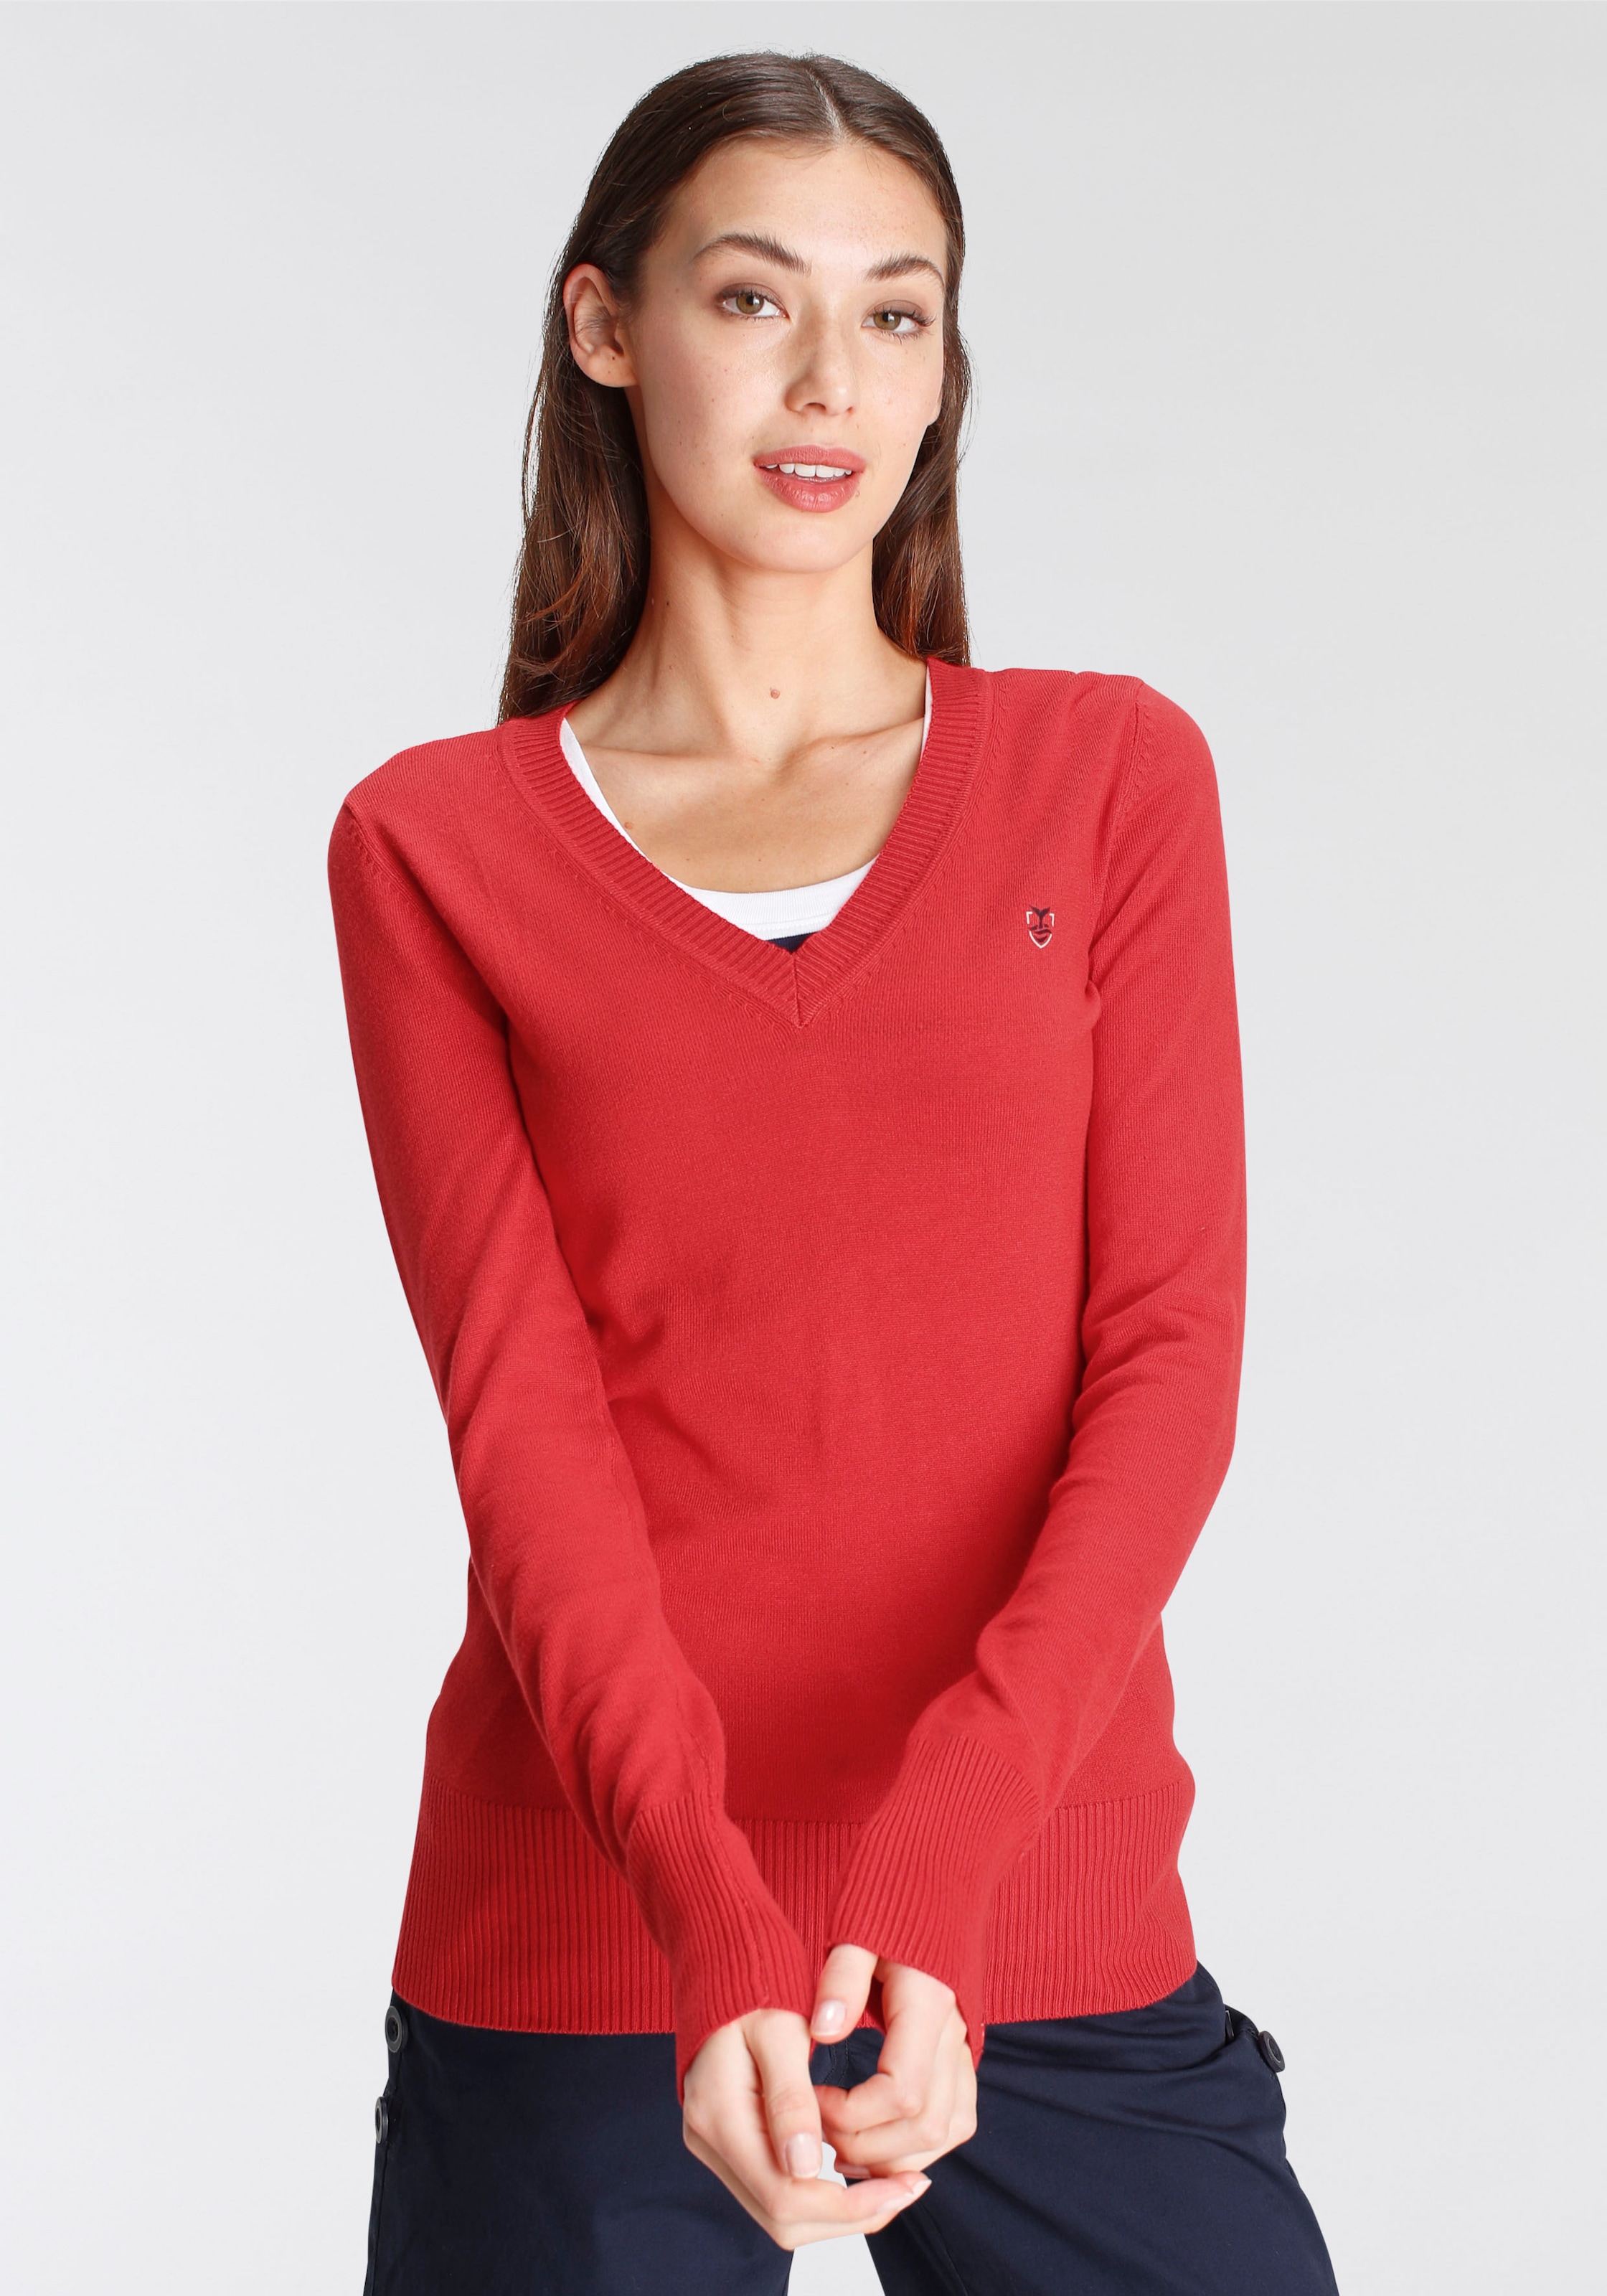 DELMAO V-Ausschnitt-Pullover, mit kleinem Logodruck auf der Brust - NEUE MARKE!